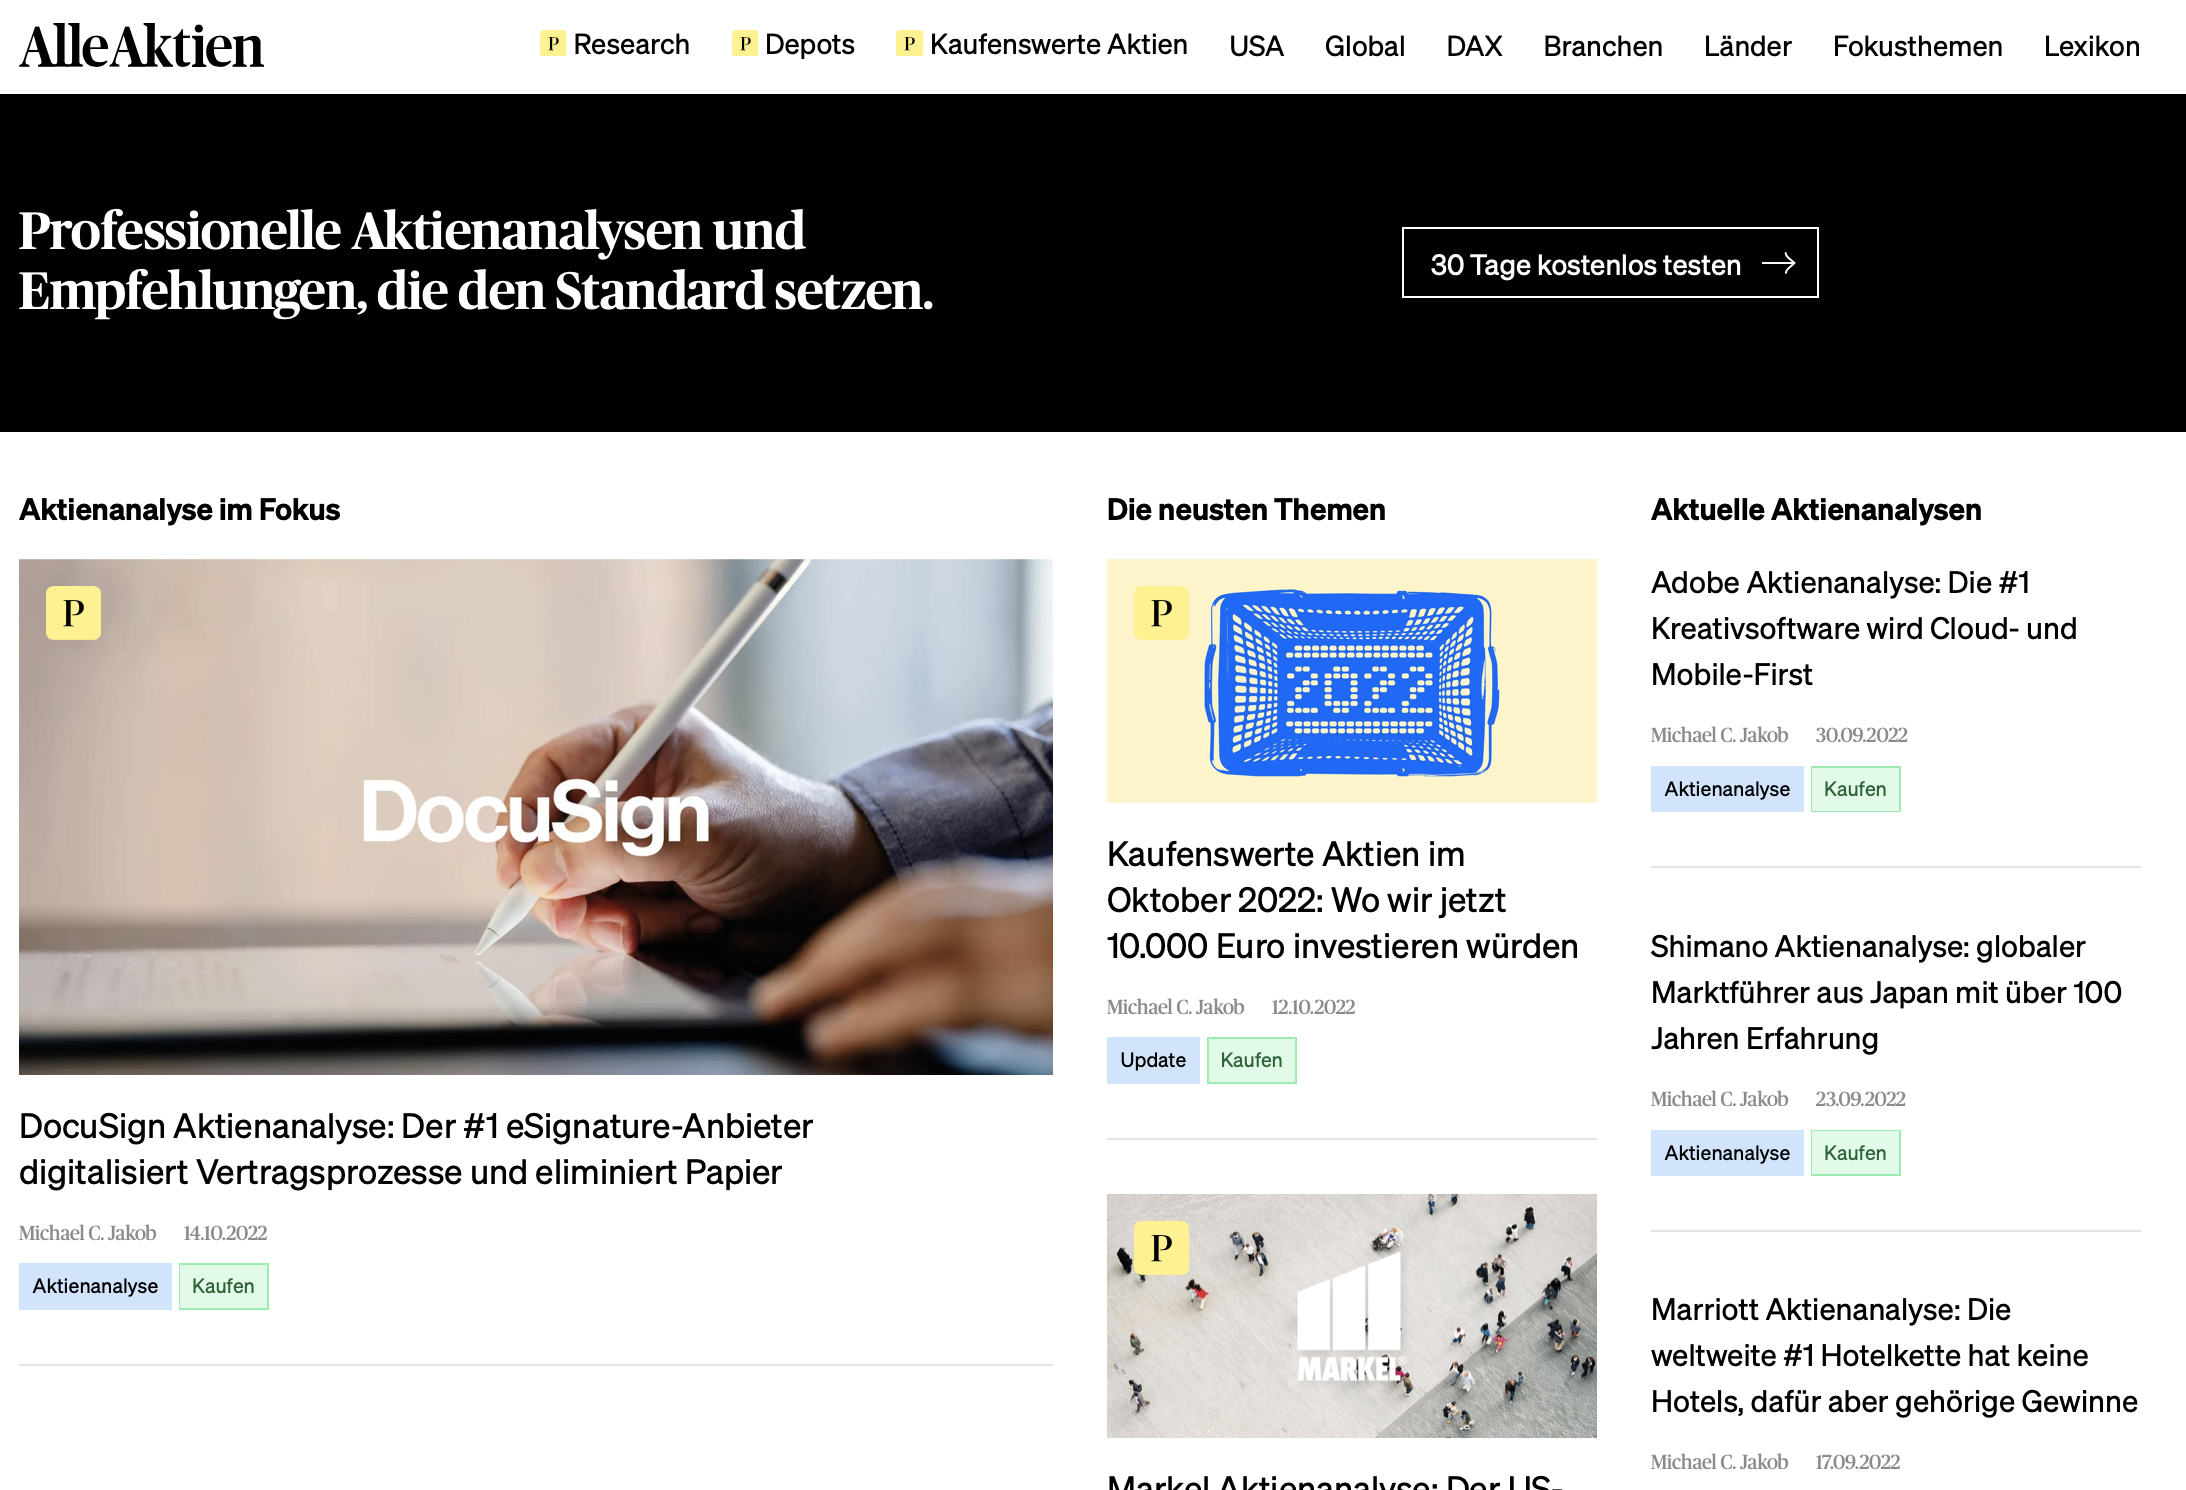 AlleAktien / startup from München / Background